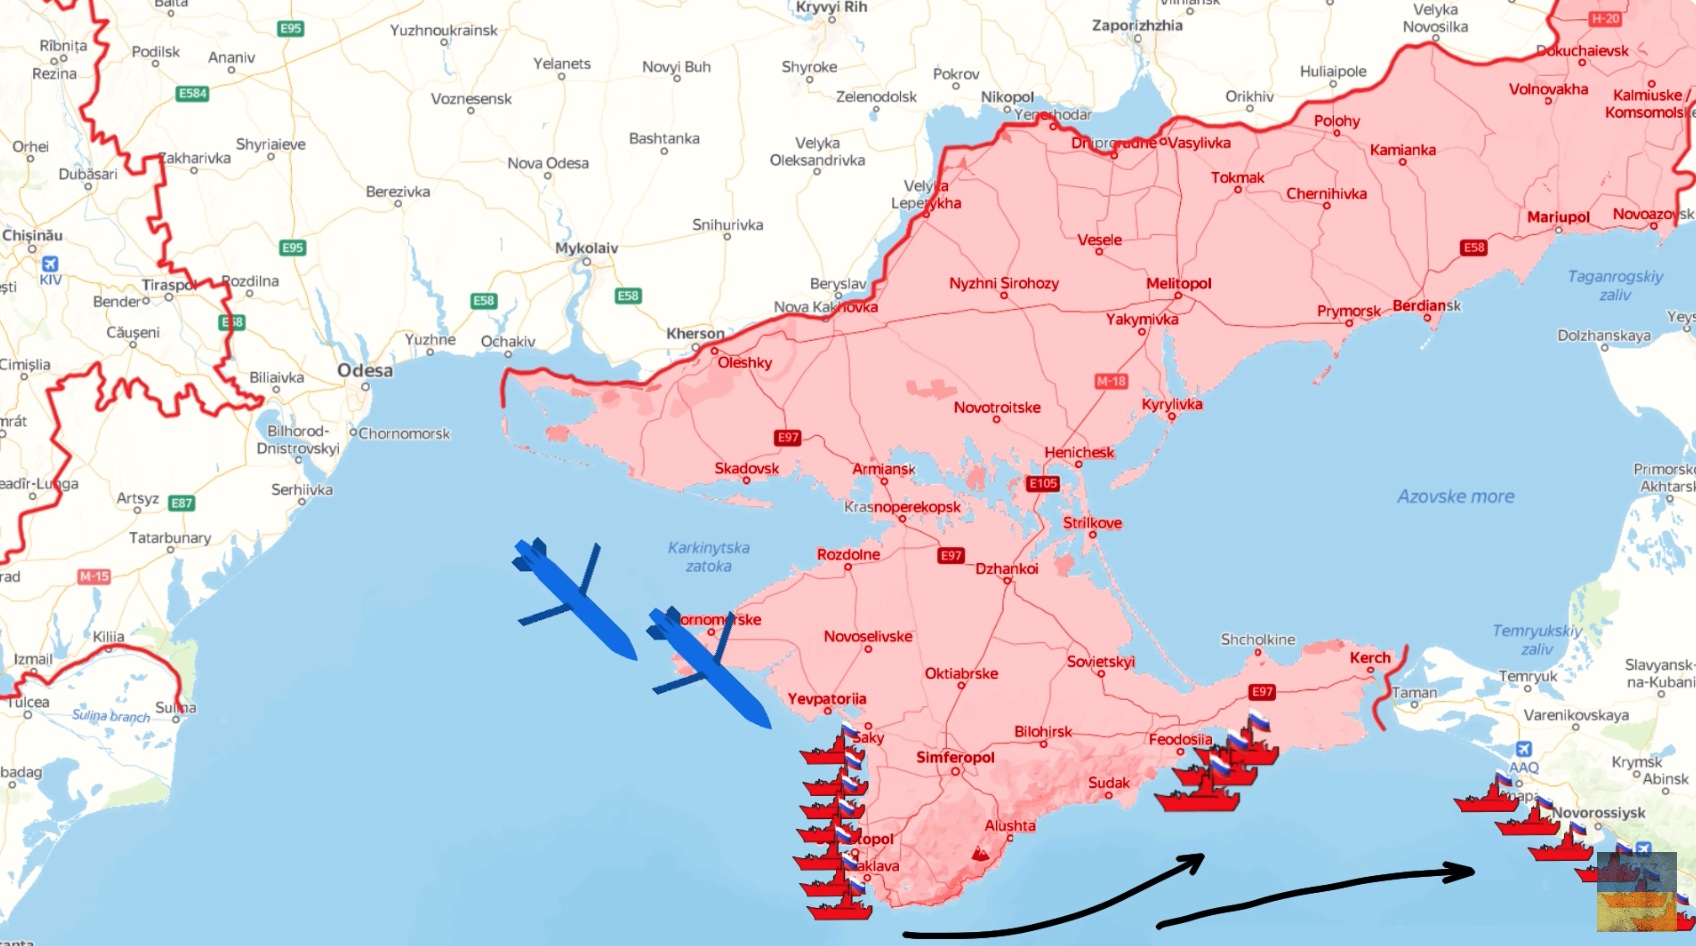 Ukraine storm shadow strike Russian ships crimea